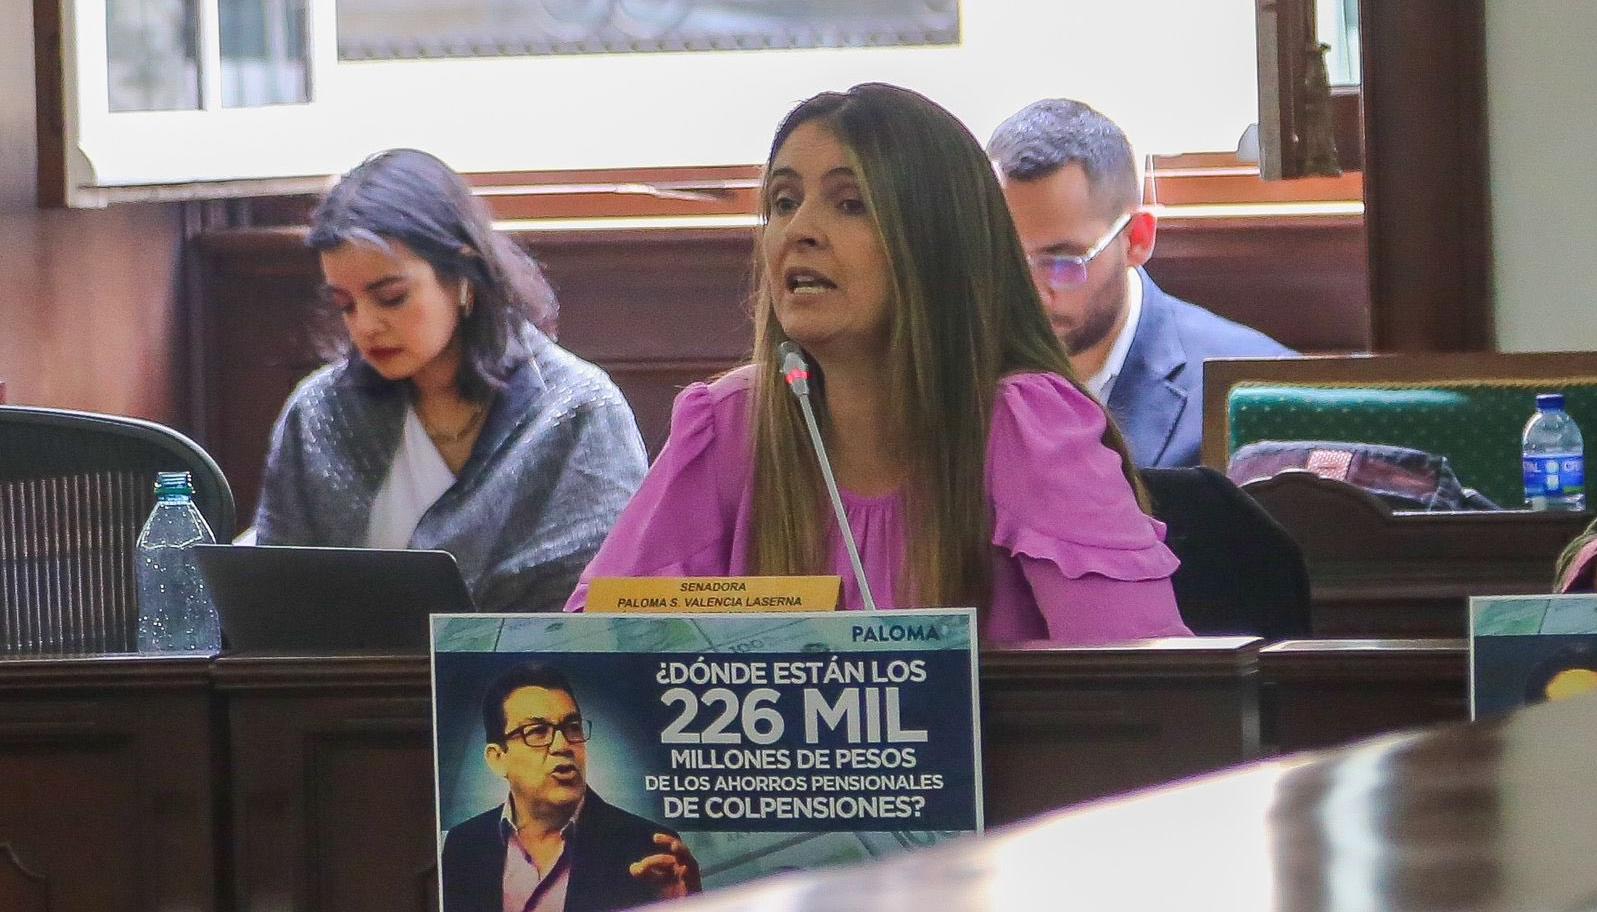 La senadora Paloma Valencia (Centro Democrático) denunció que Colpensiones ha despilfarrado más de $226 mil millones